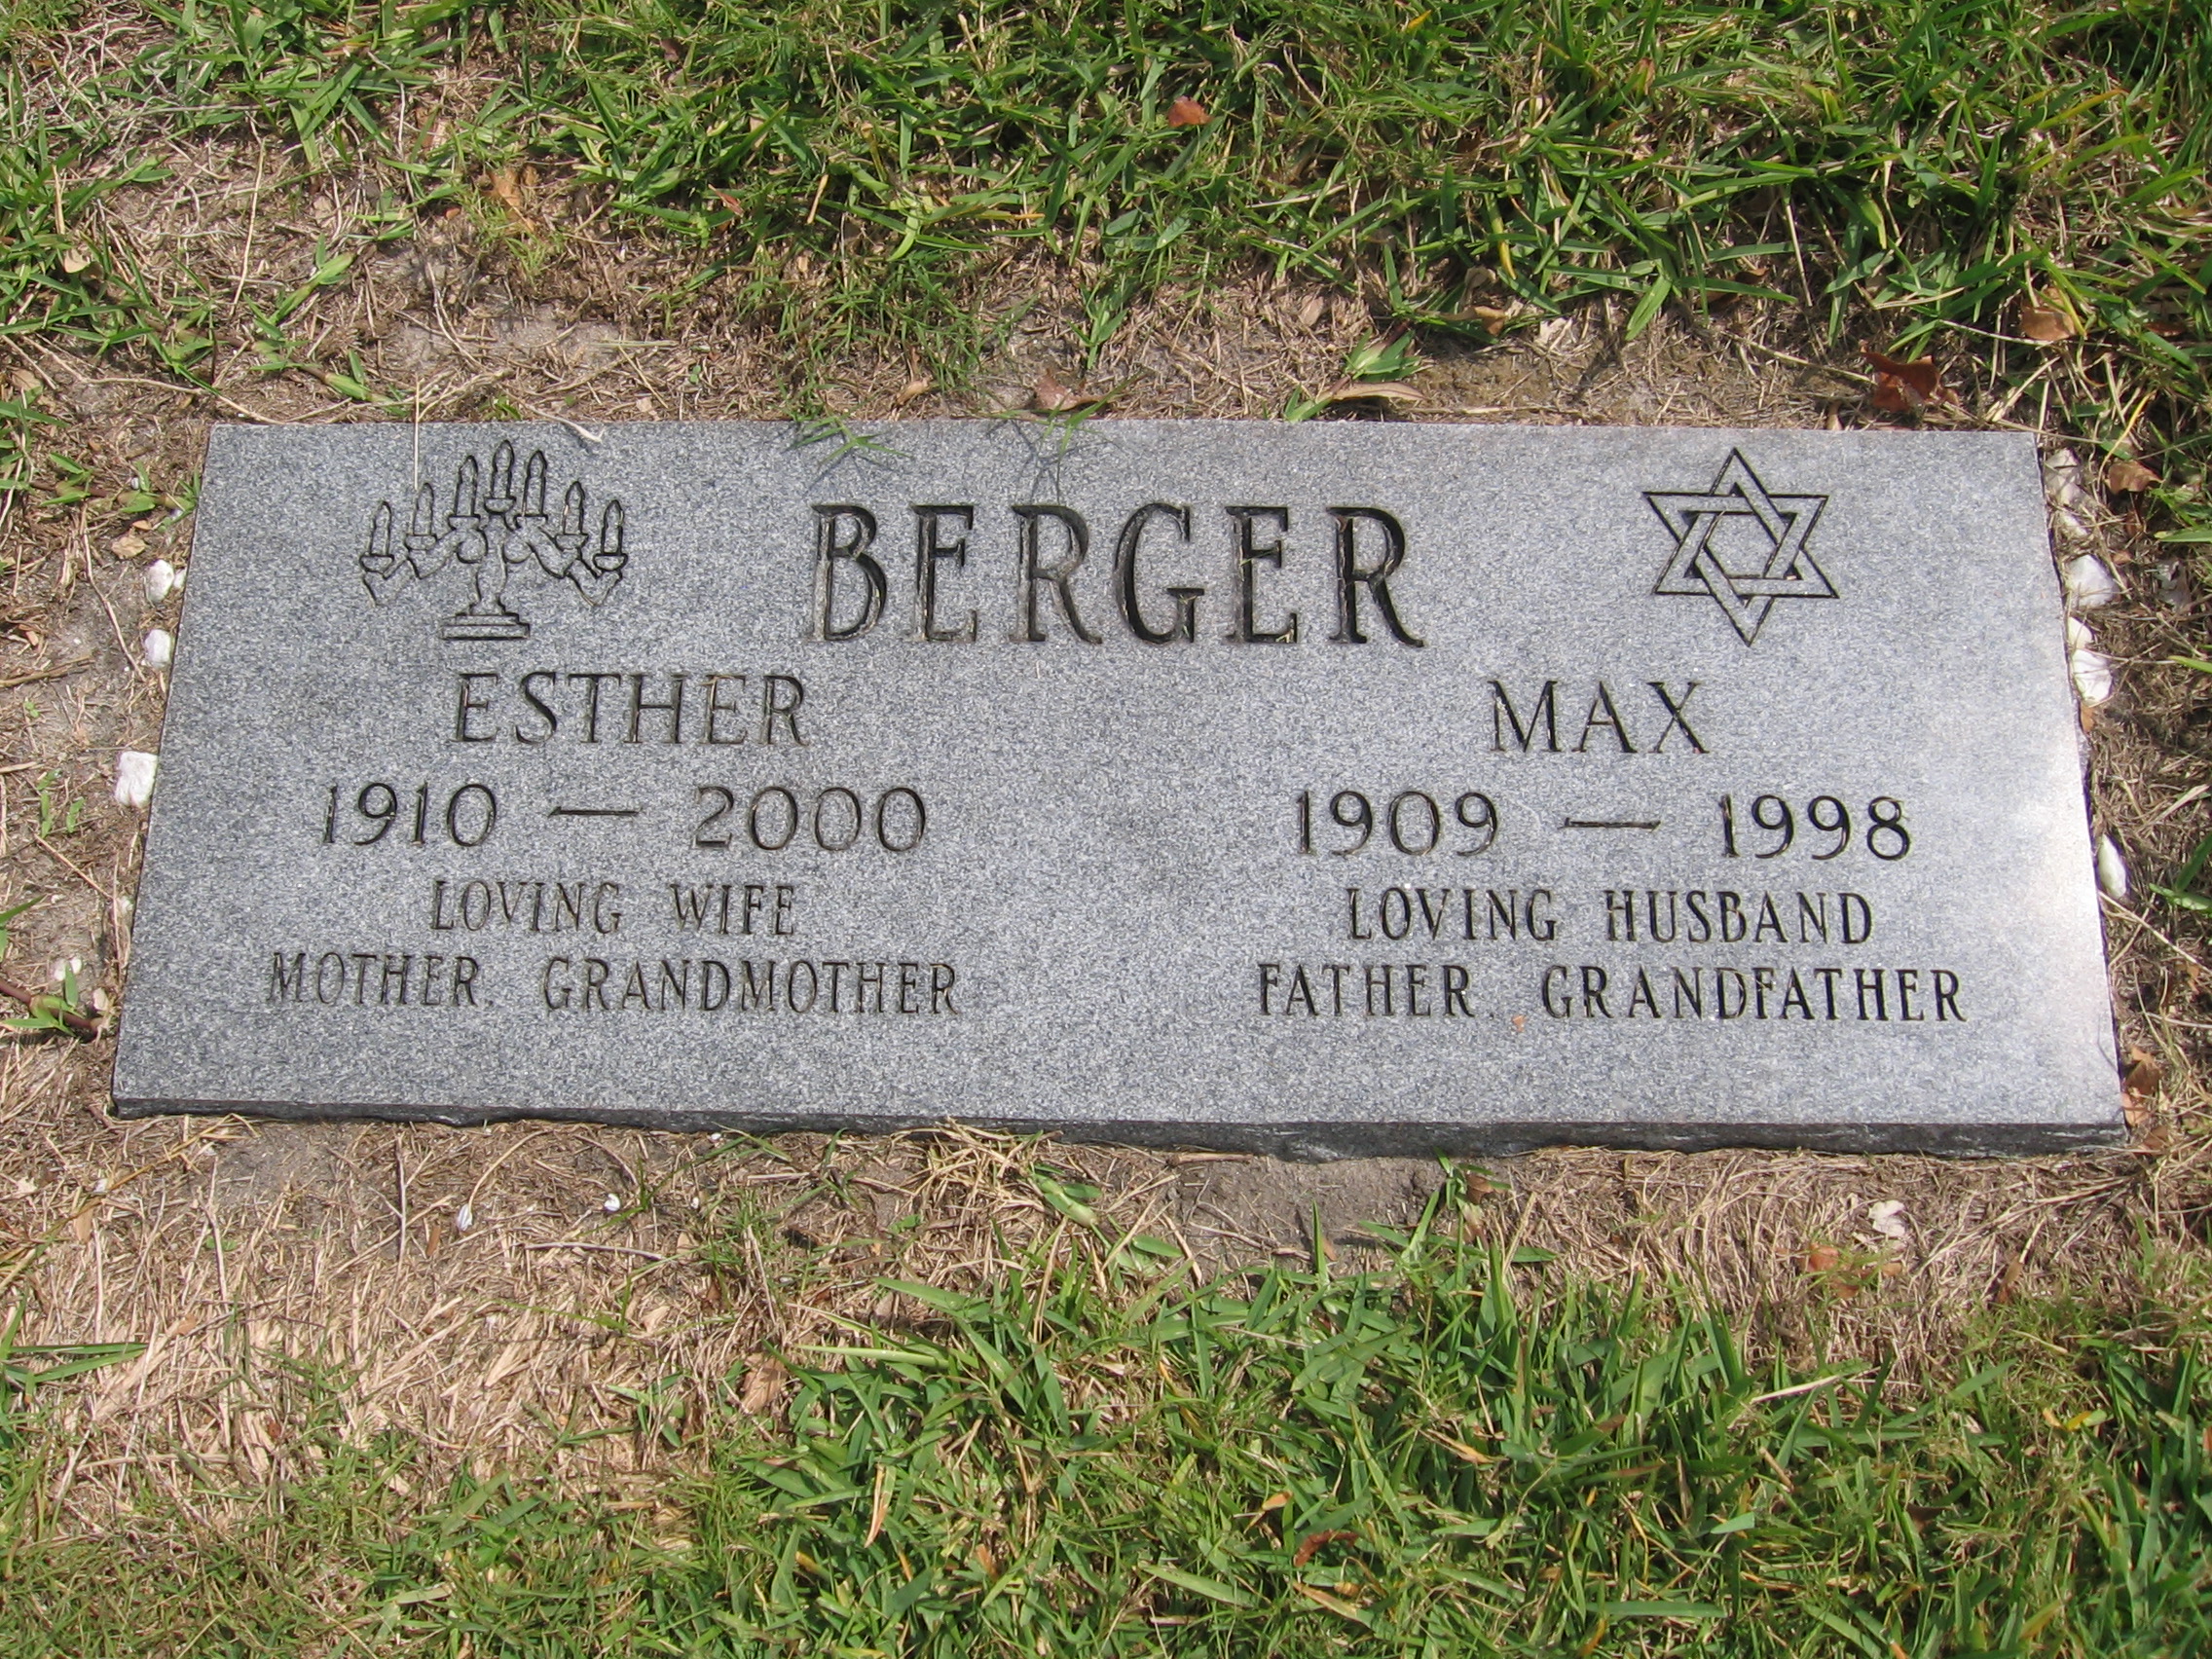 Max Berger